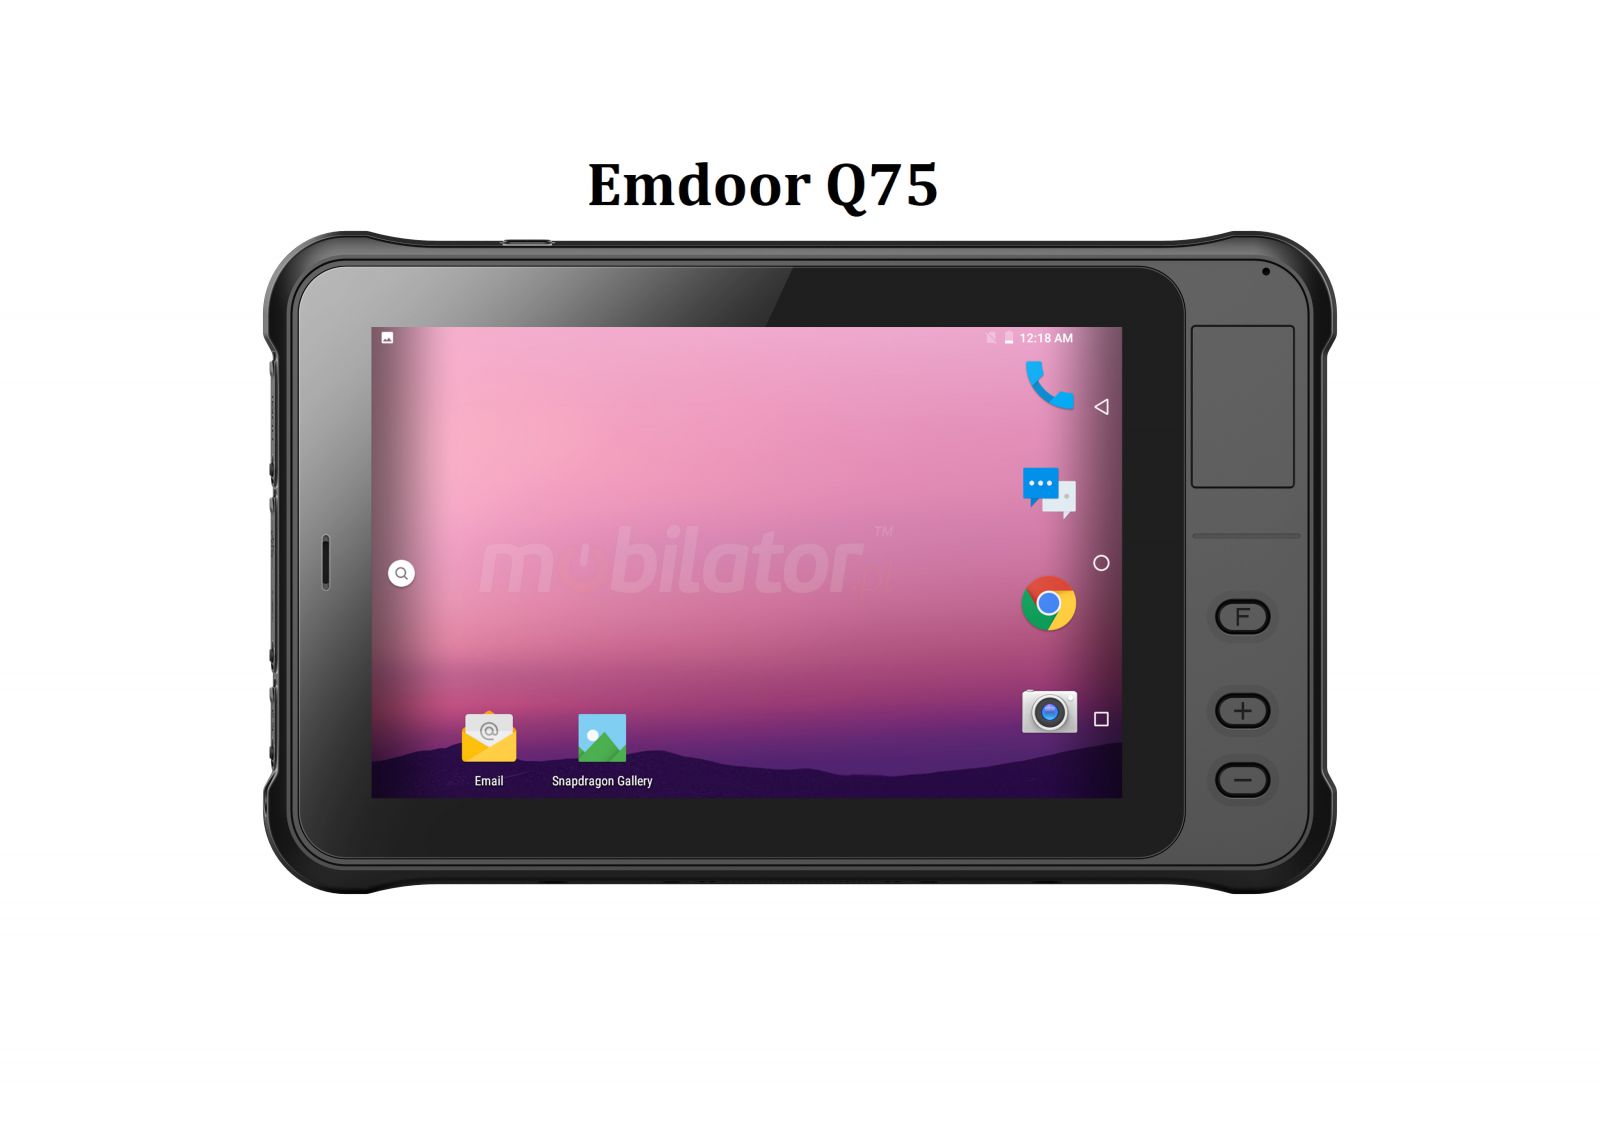 Wytrzymay tablet z 7 calowym ekranem IPS, Androidem 10.0 GMS, 4GB RAM, dyskiem 64GB, NFC, skanerem kodw 1D - Emdoor Q75 v.2